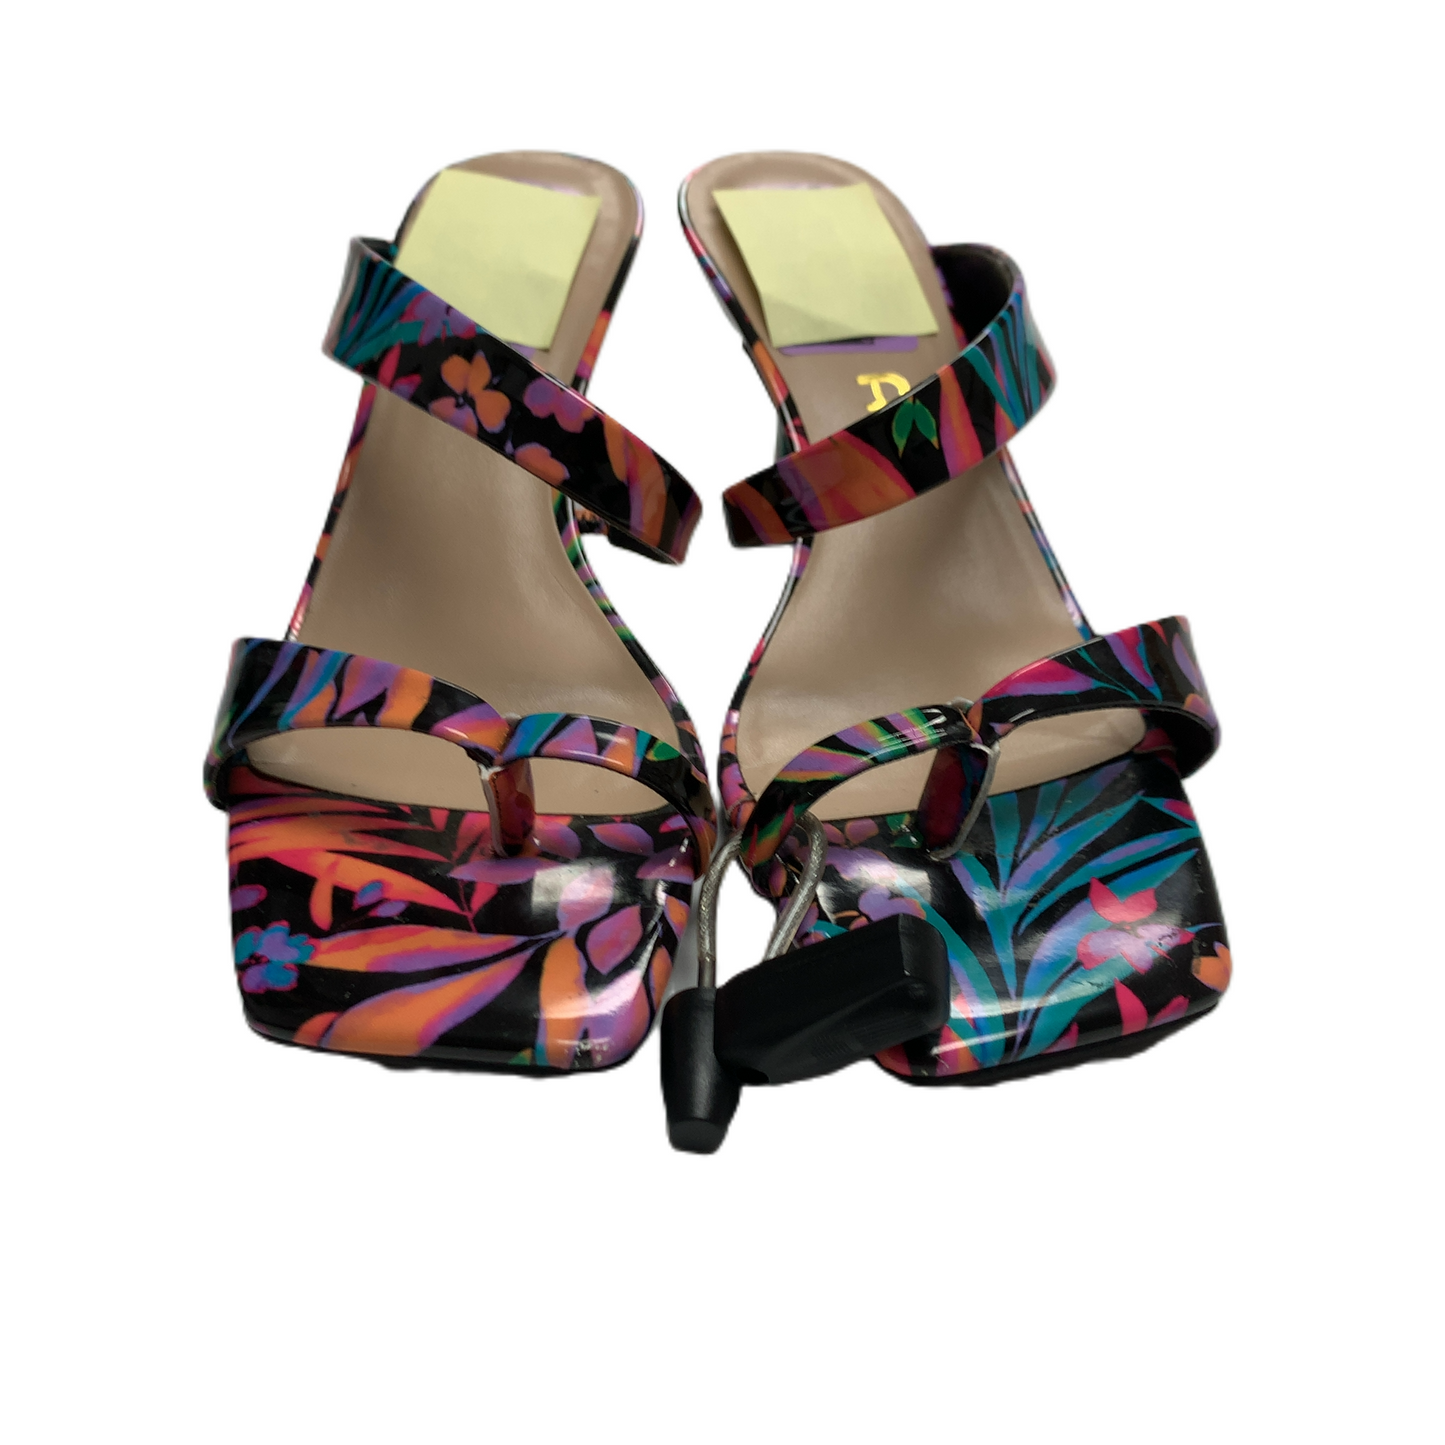 Sandals Heels Stiletto By Unisa  Size: 7.5